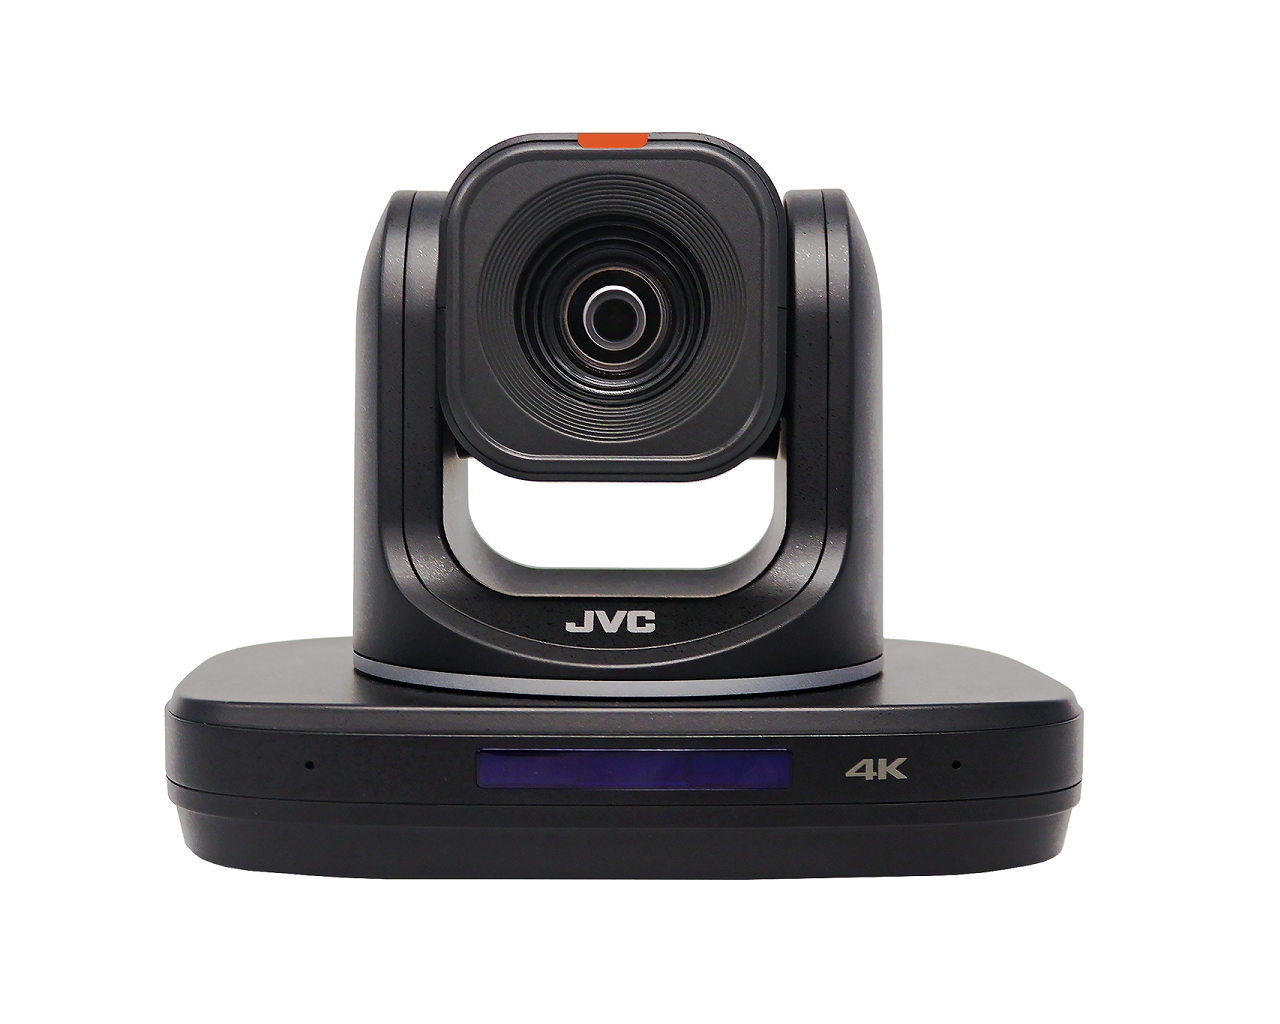 JVC KY-PZ540NBU 40x 60P PTZ Camera with NDI HX3 - Black